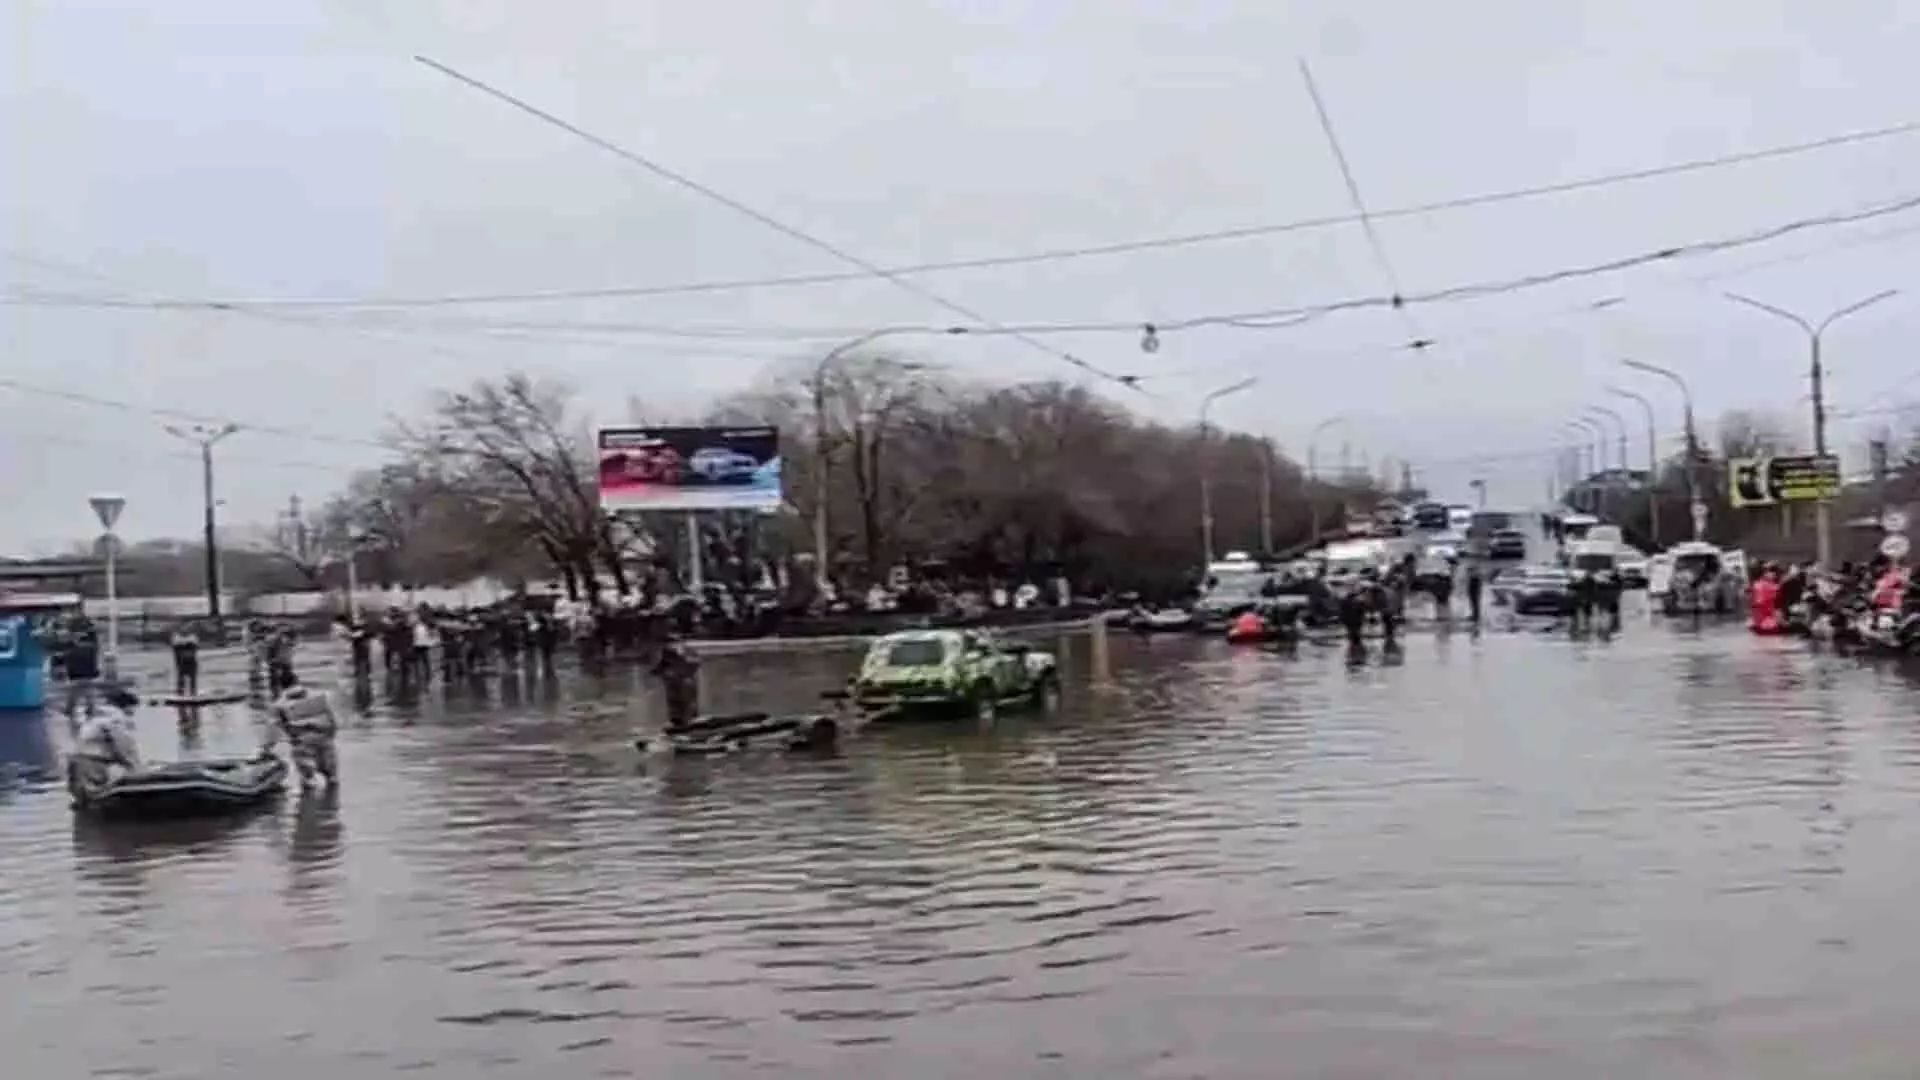 रूस के ओर्स्क में जल स्तर गंभीर, बांध टूटने के बाद और बाढ़ की आशंका